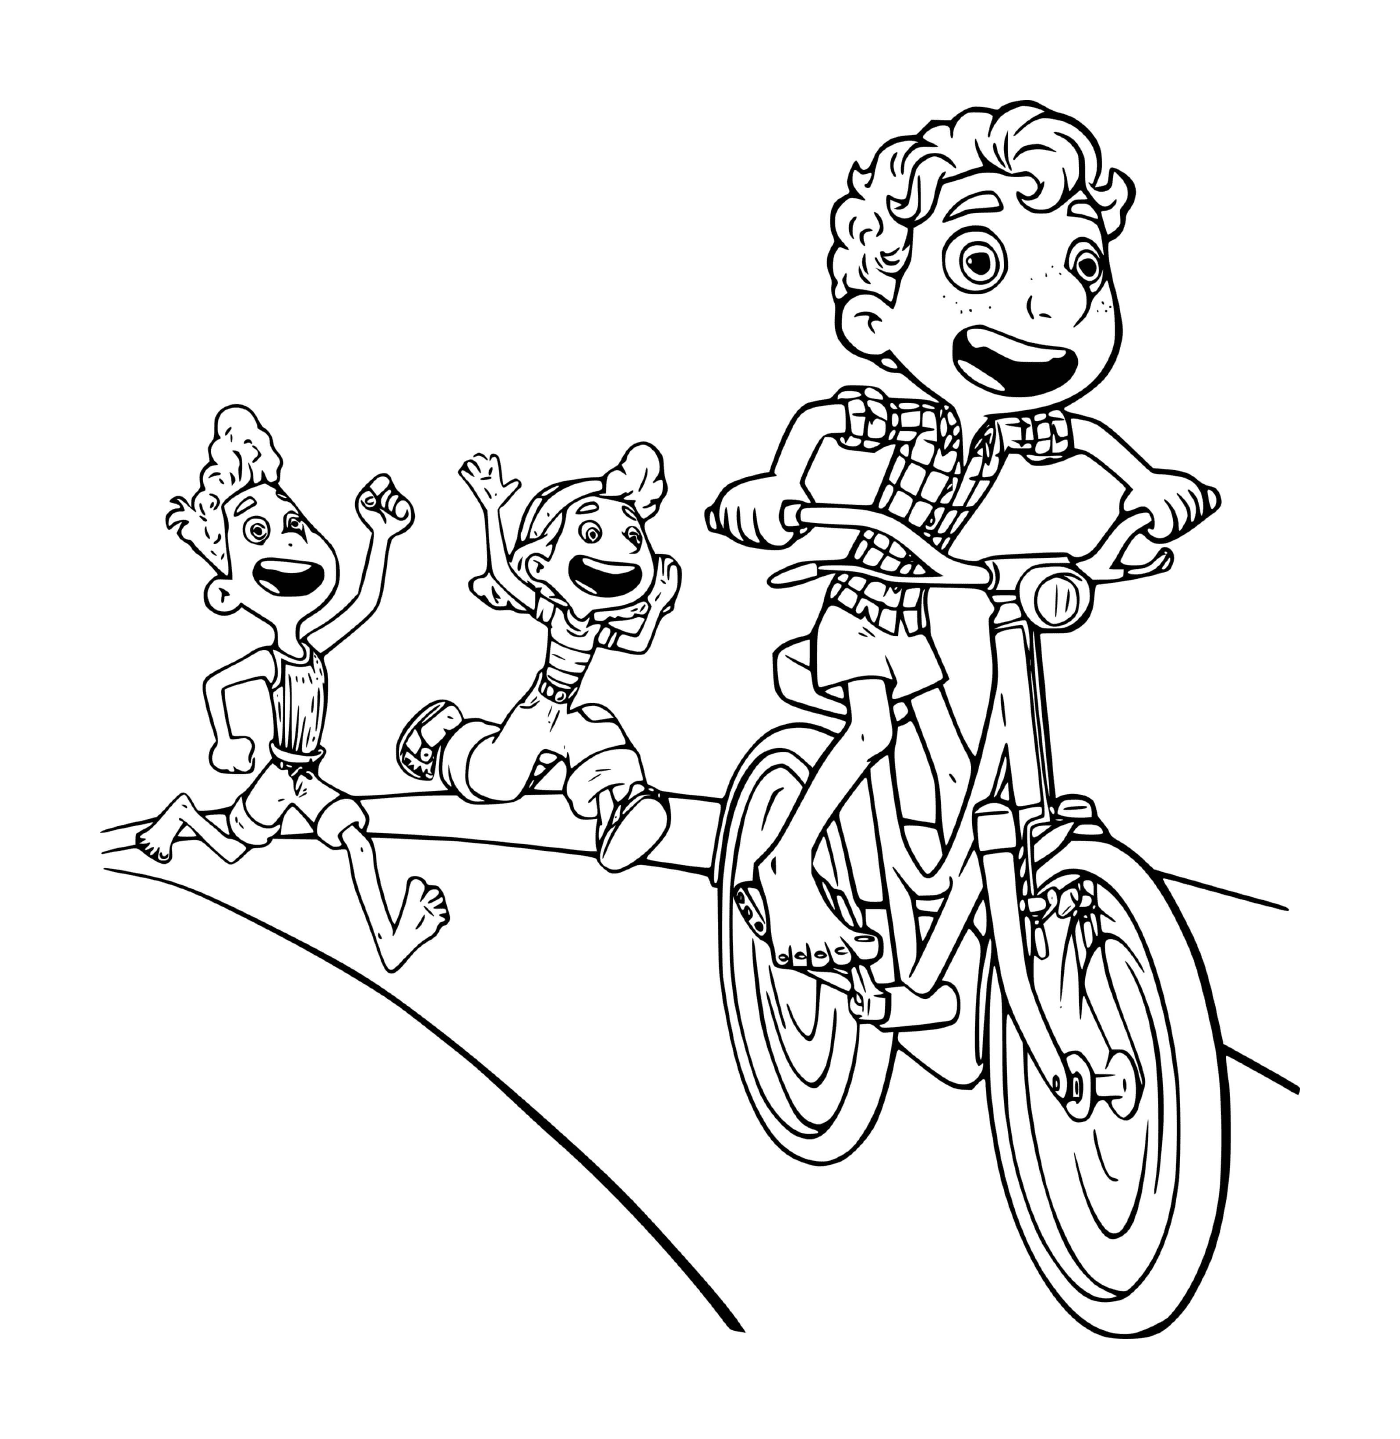  Boy on a bike 